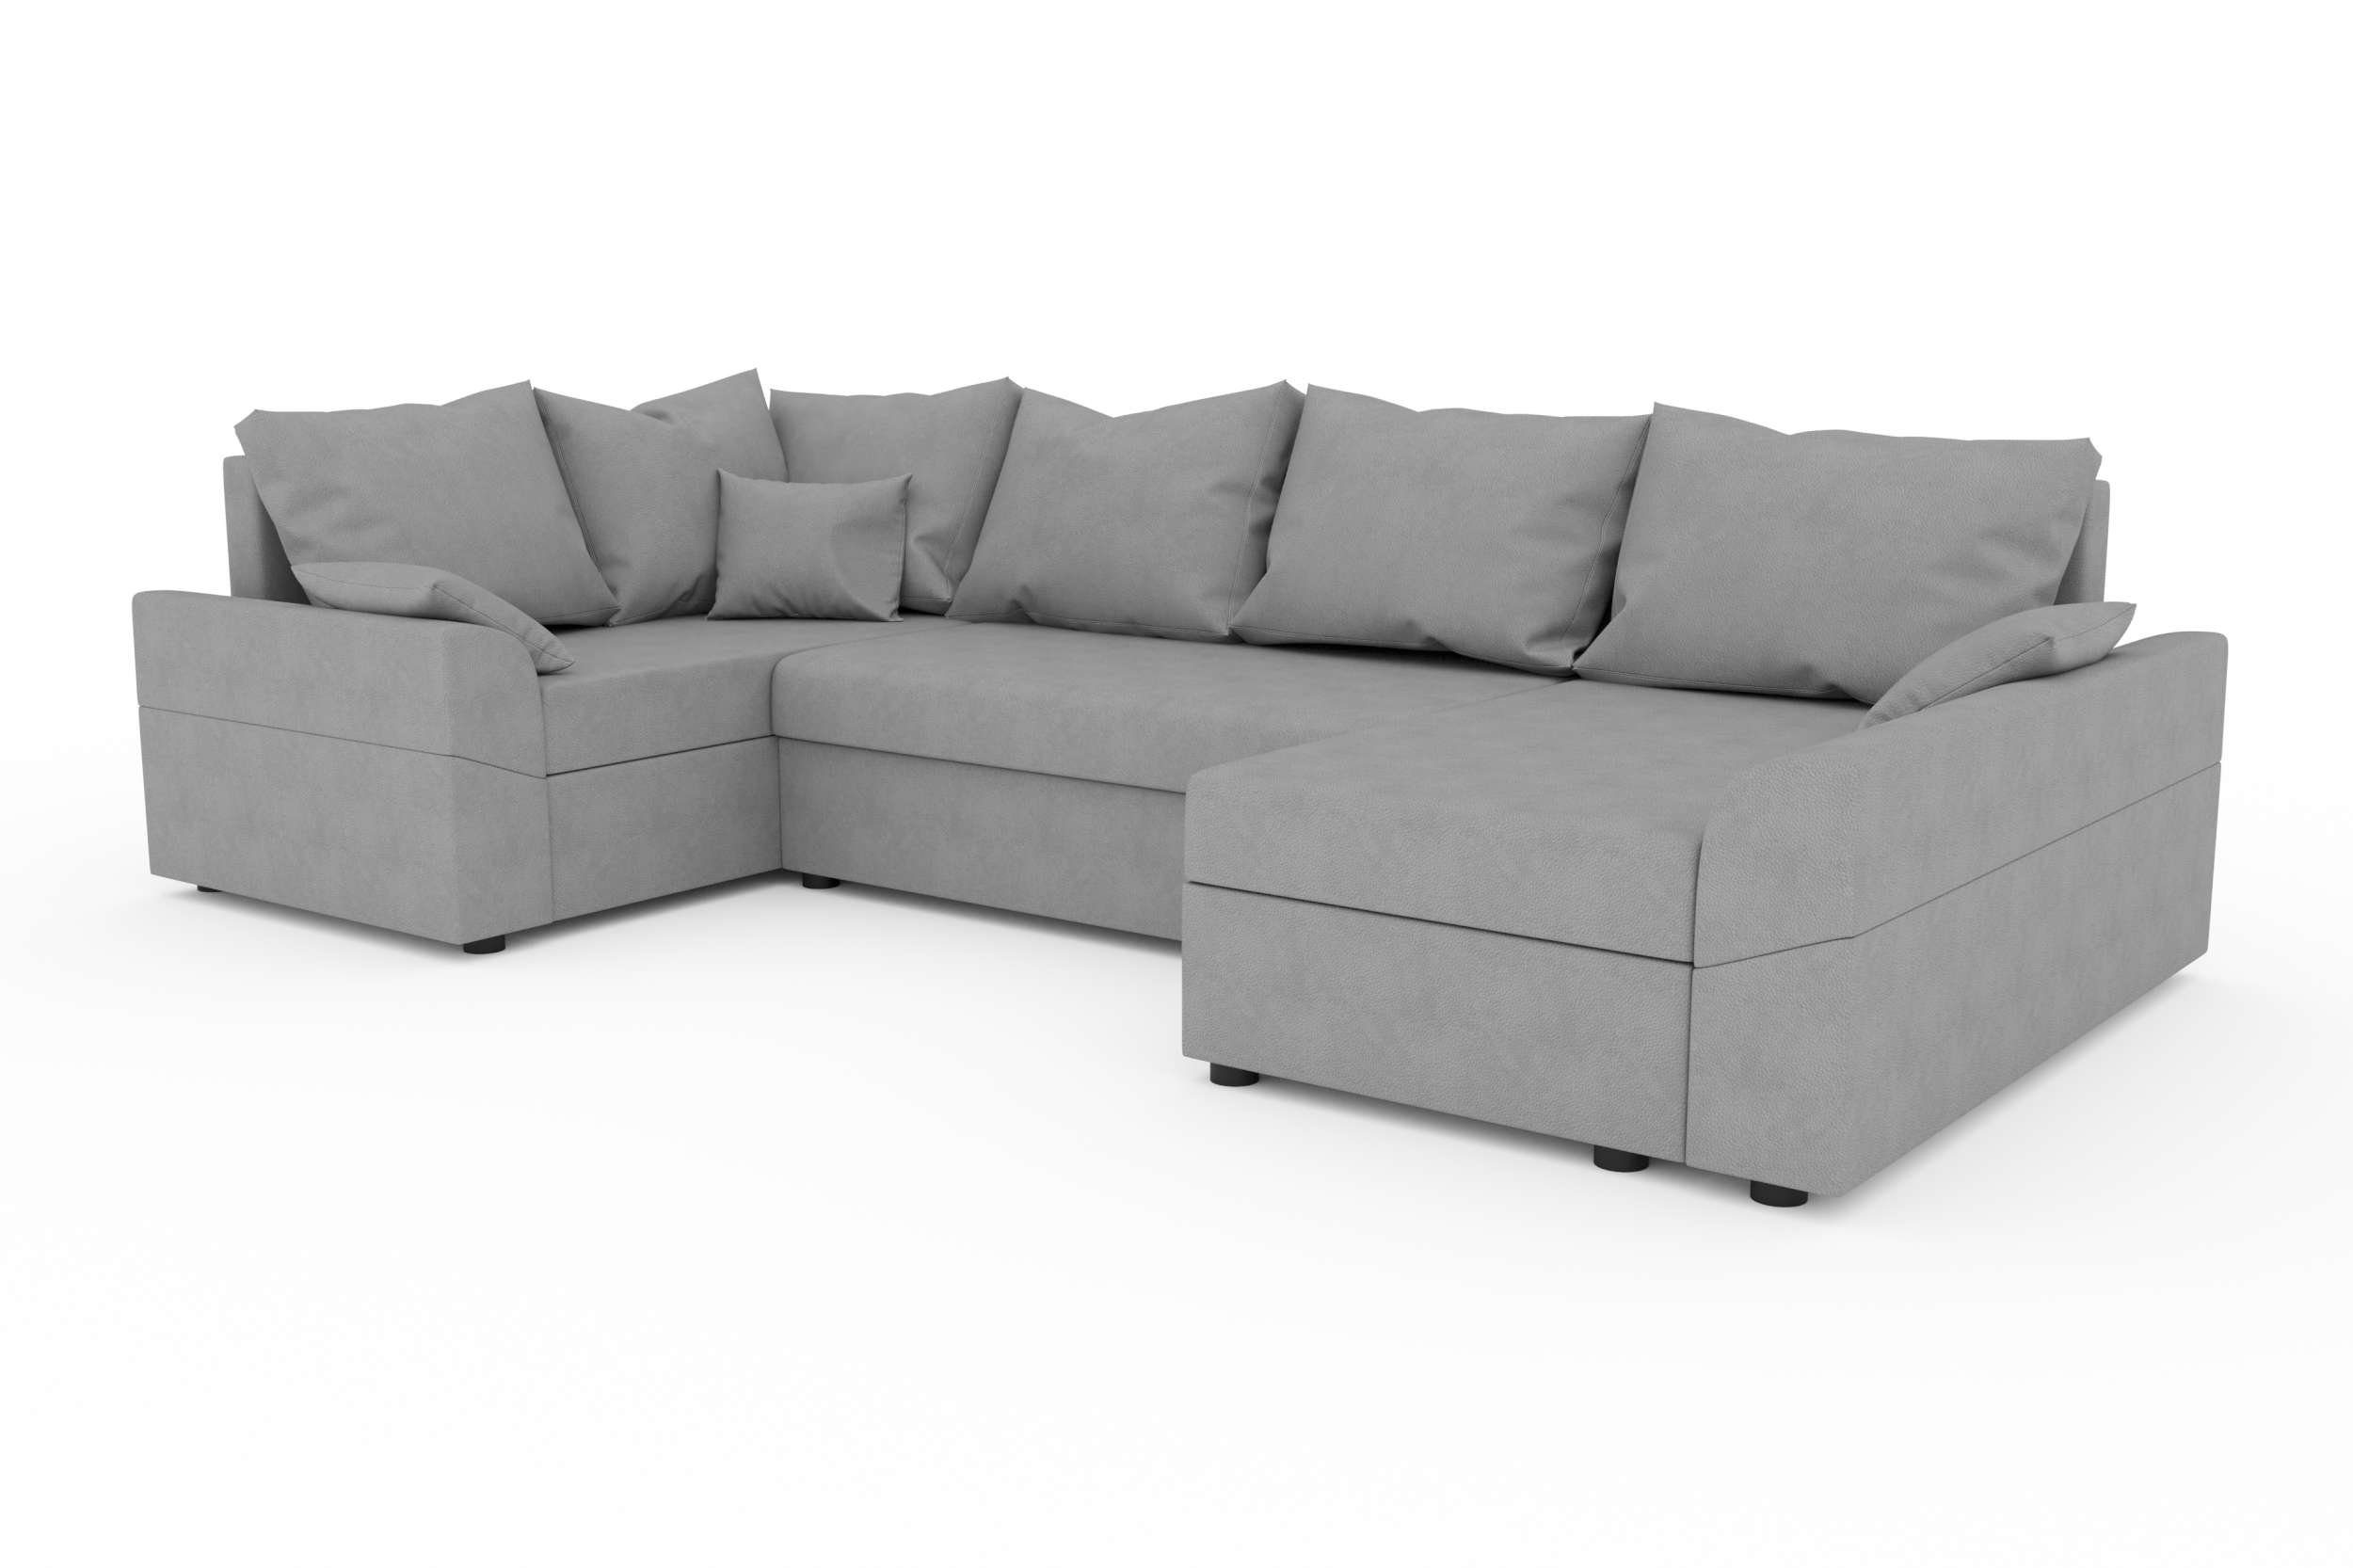 Bettfunktion, Modern Eckcouch, U-Form, mit Bailey, Wohnlandschaft mit Bettkasten, Stylefy Sitzkomfort, Design Sofa,